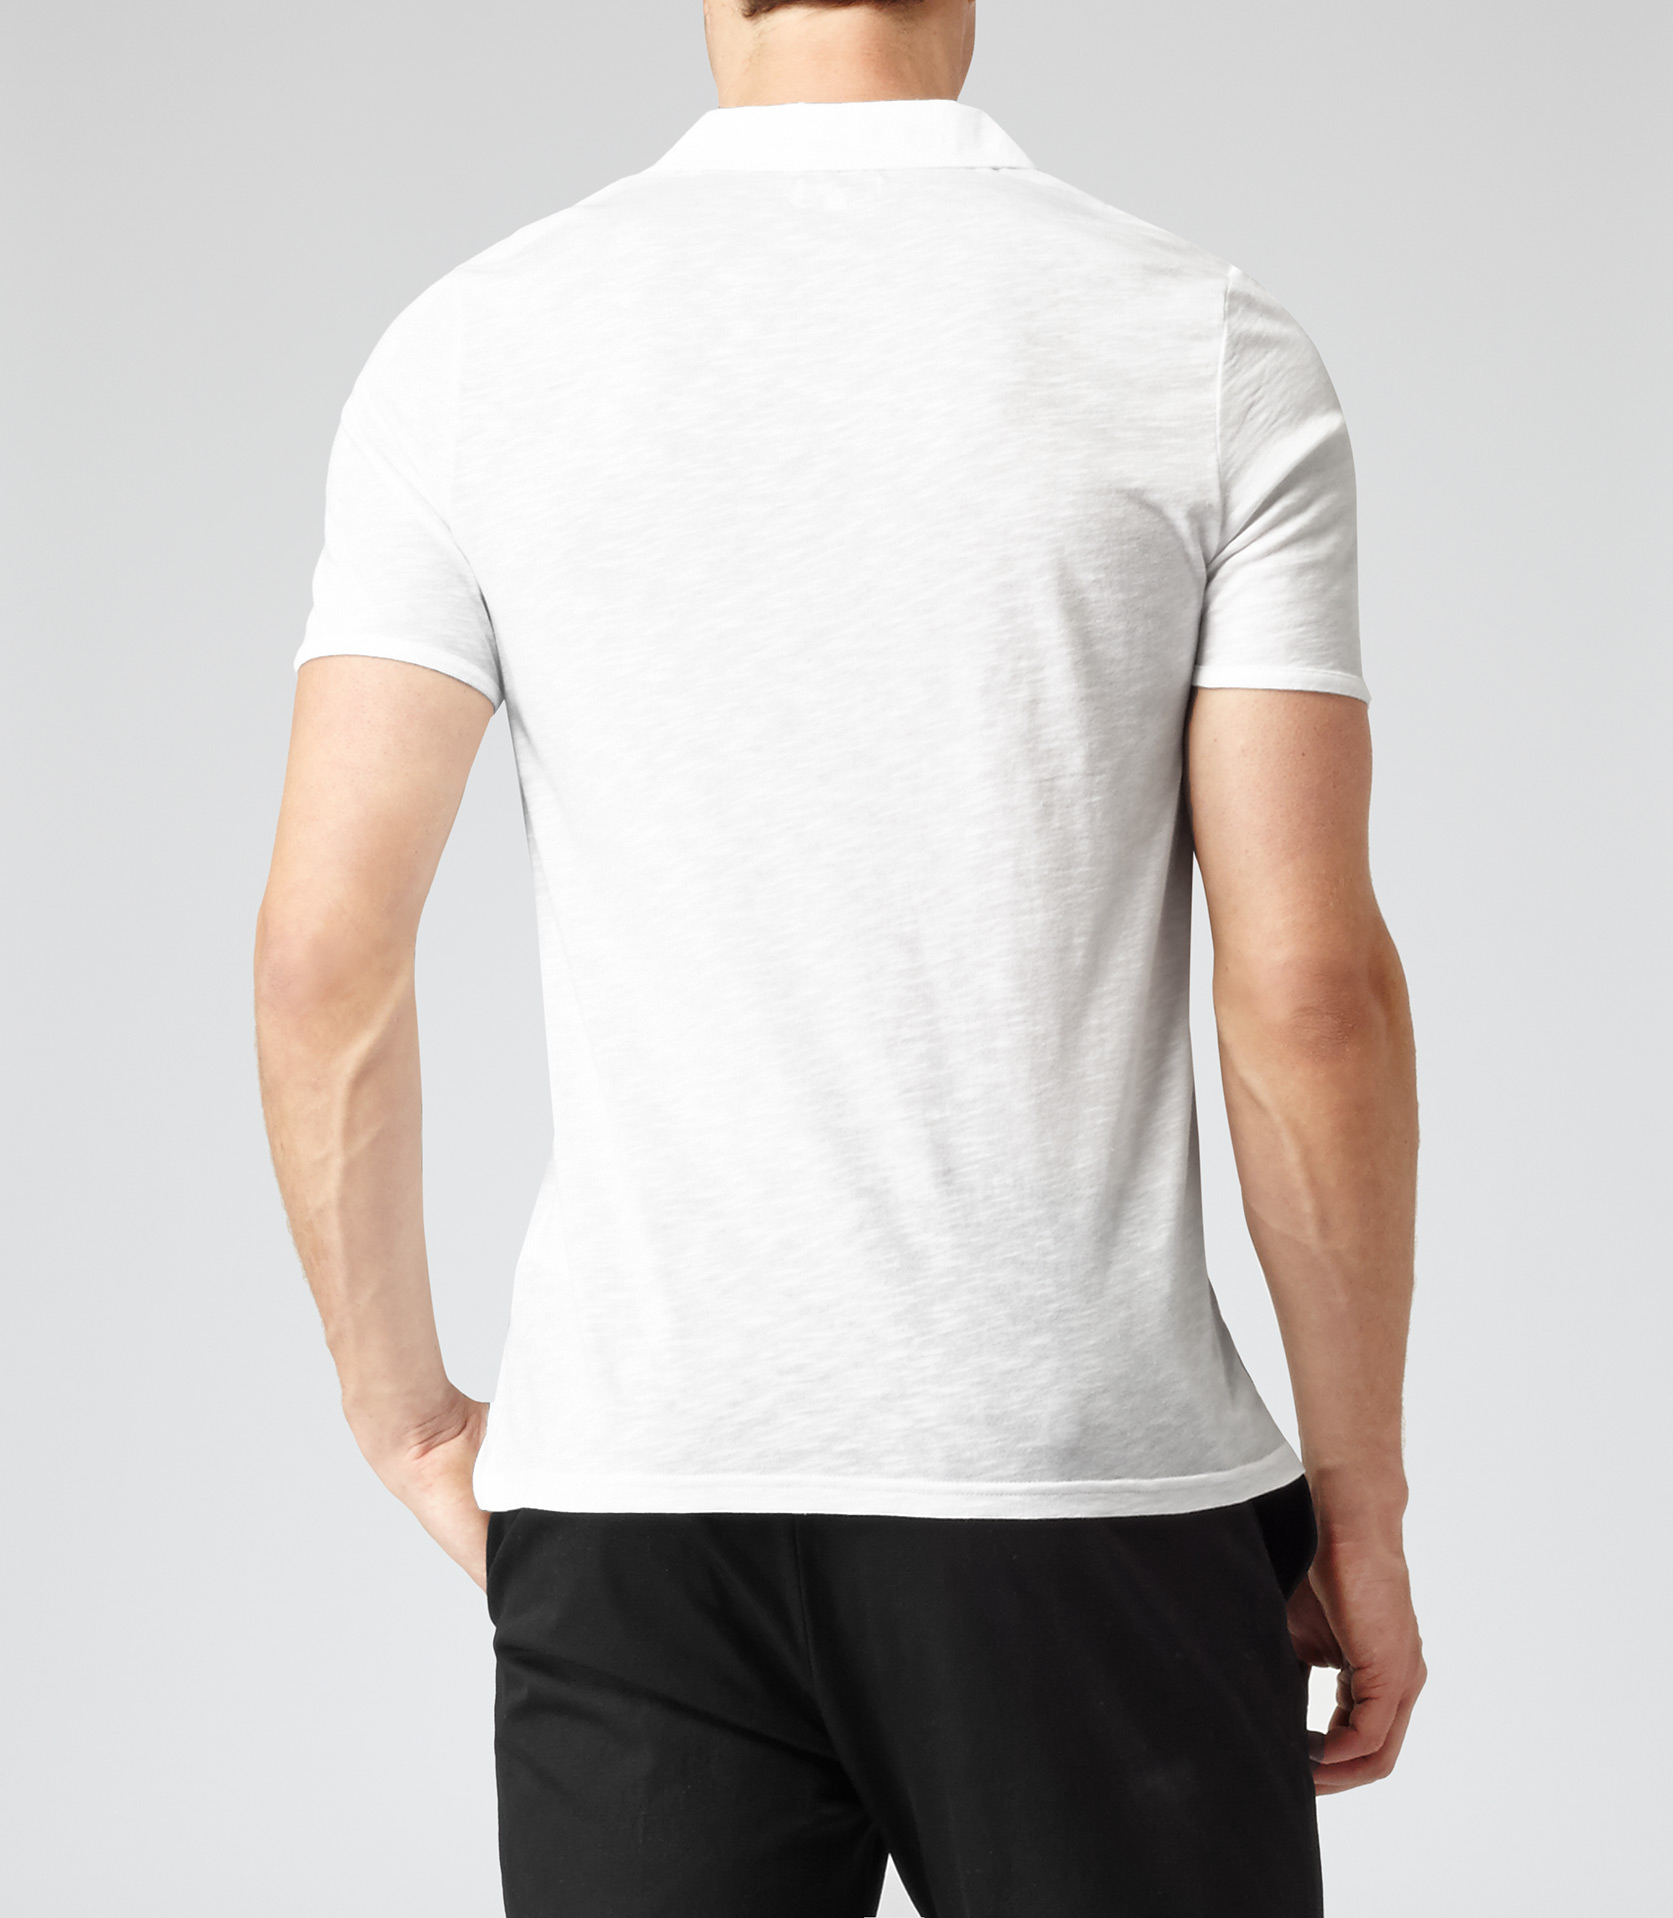 Reiss Kingsley Open Collar Polo T-Shirt in White for Men - Lyst